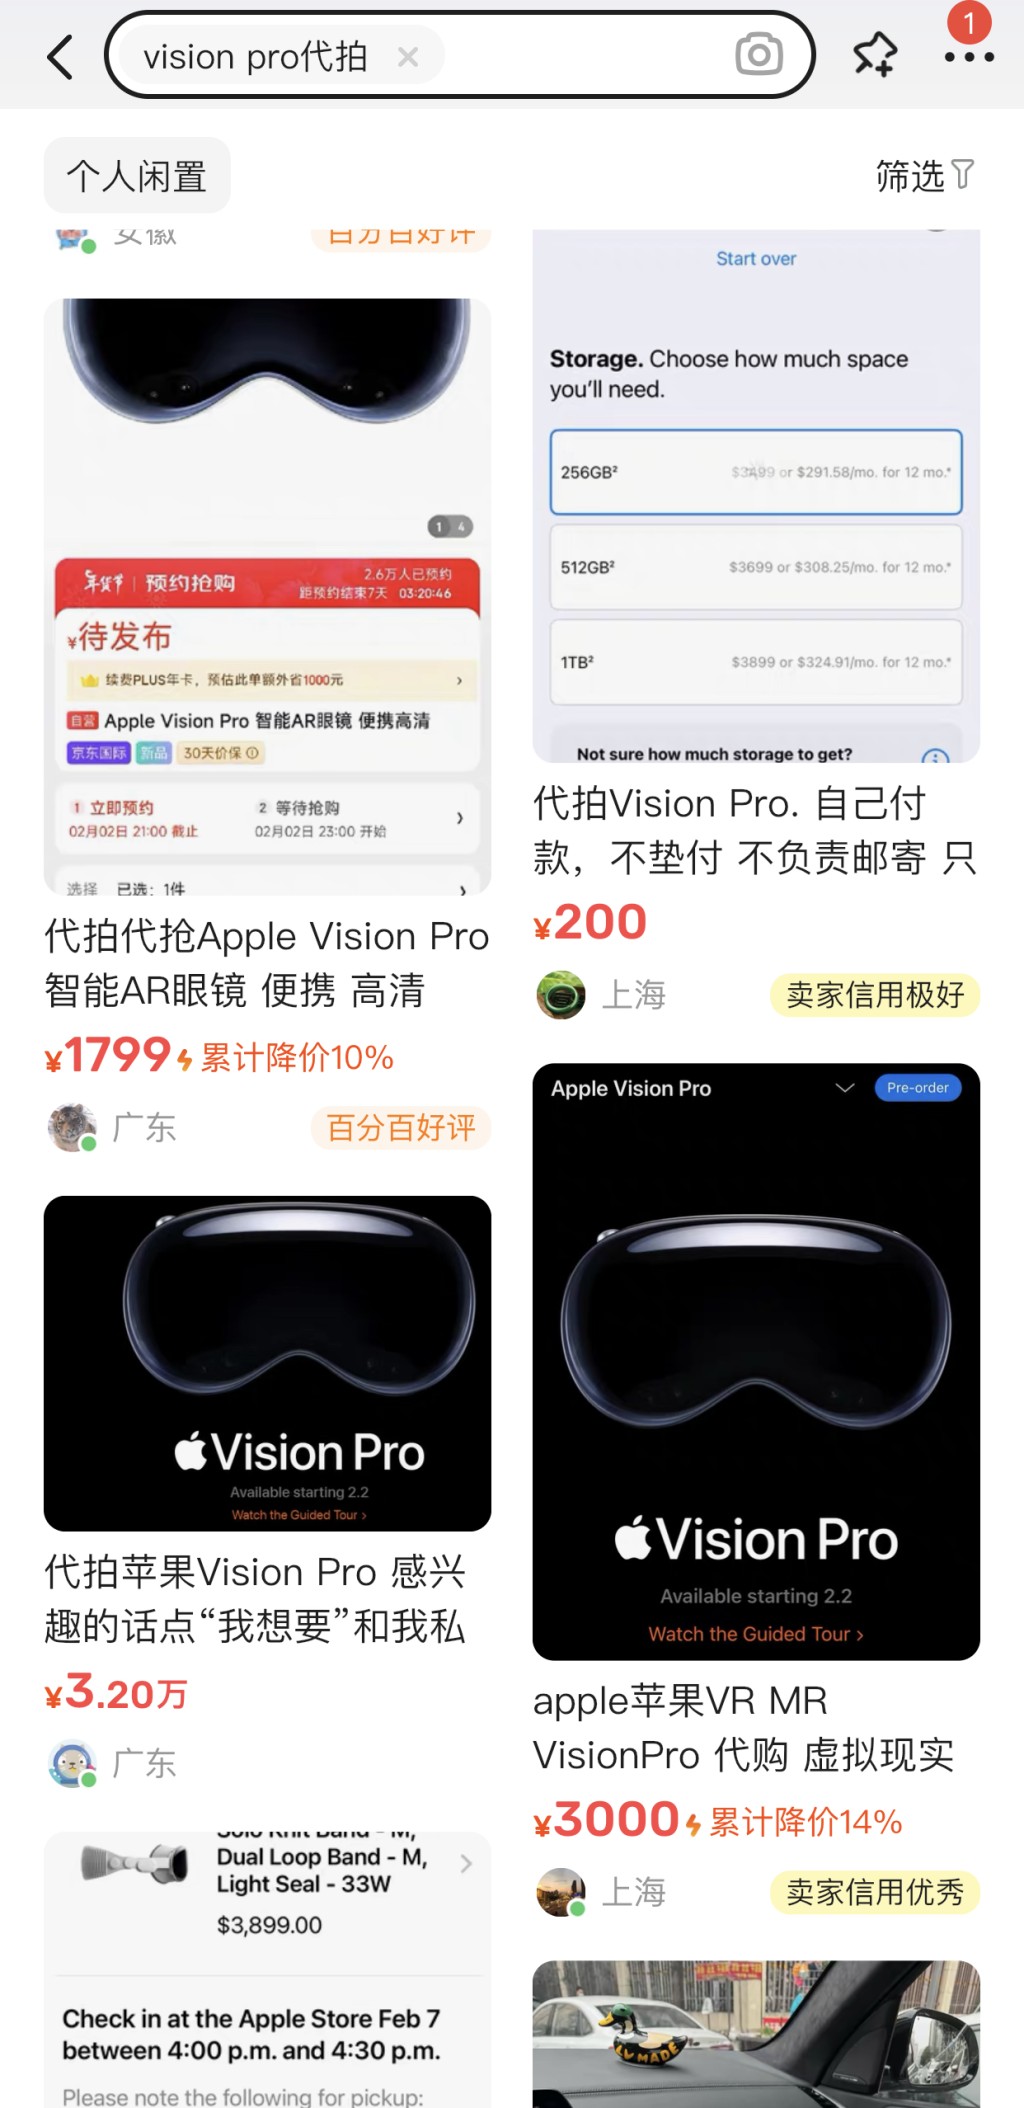 Vision Pro還有代拍和指導下單的服務業務，賣家宣稱可以幫助用戶原價拿下蘋果Vision Pro，報價為100元至1,000元不等。店主承諾全程指導下單和郵寄事宜，直到顧客拿到產品為止。